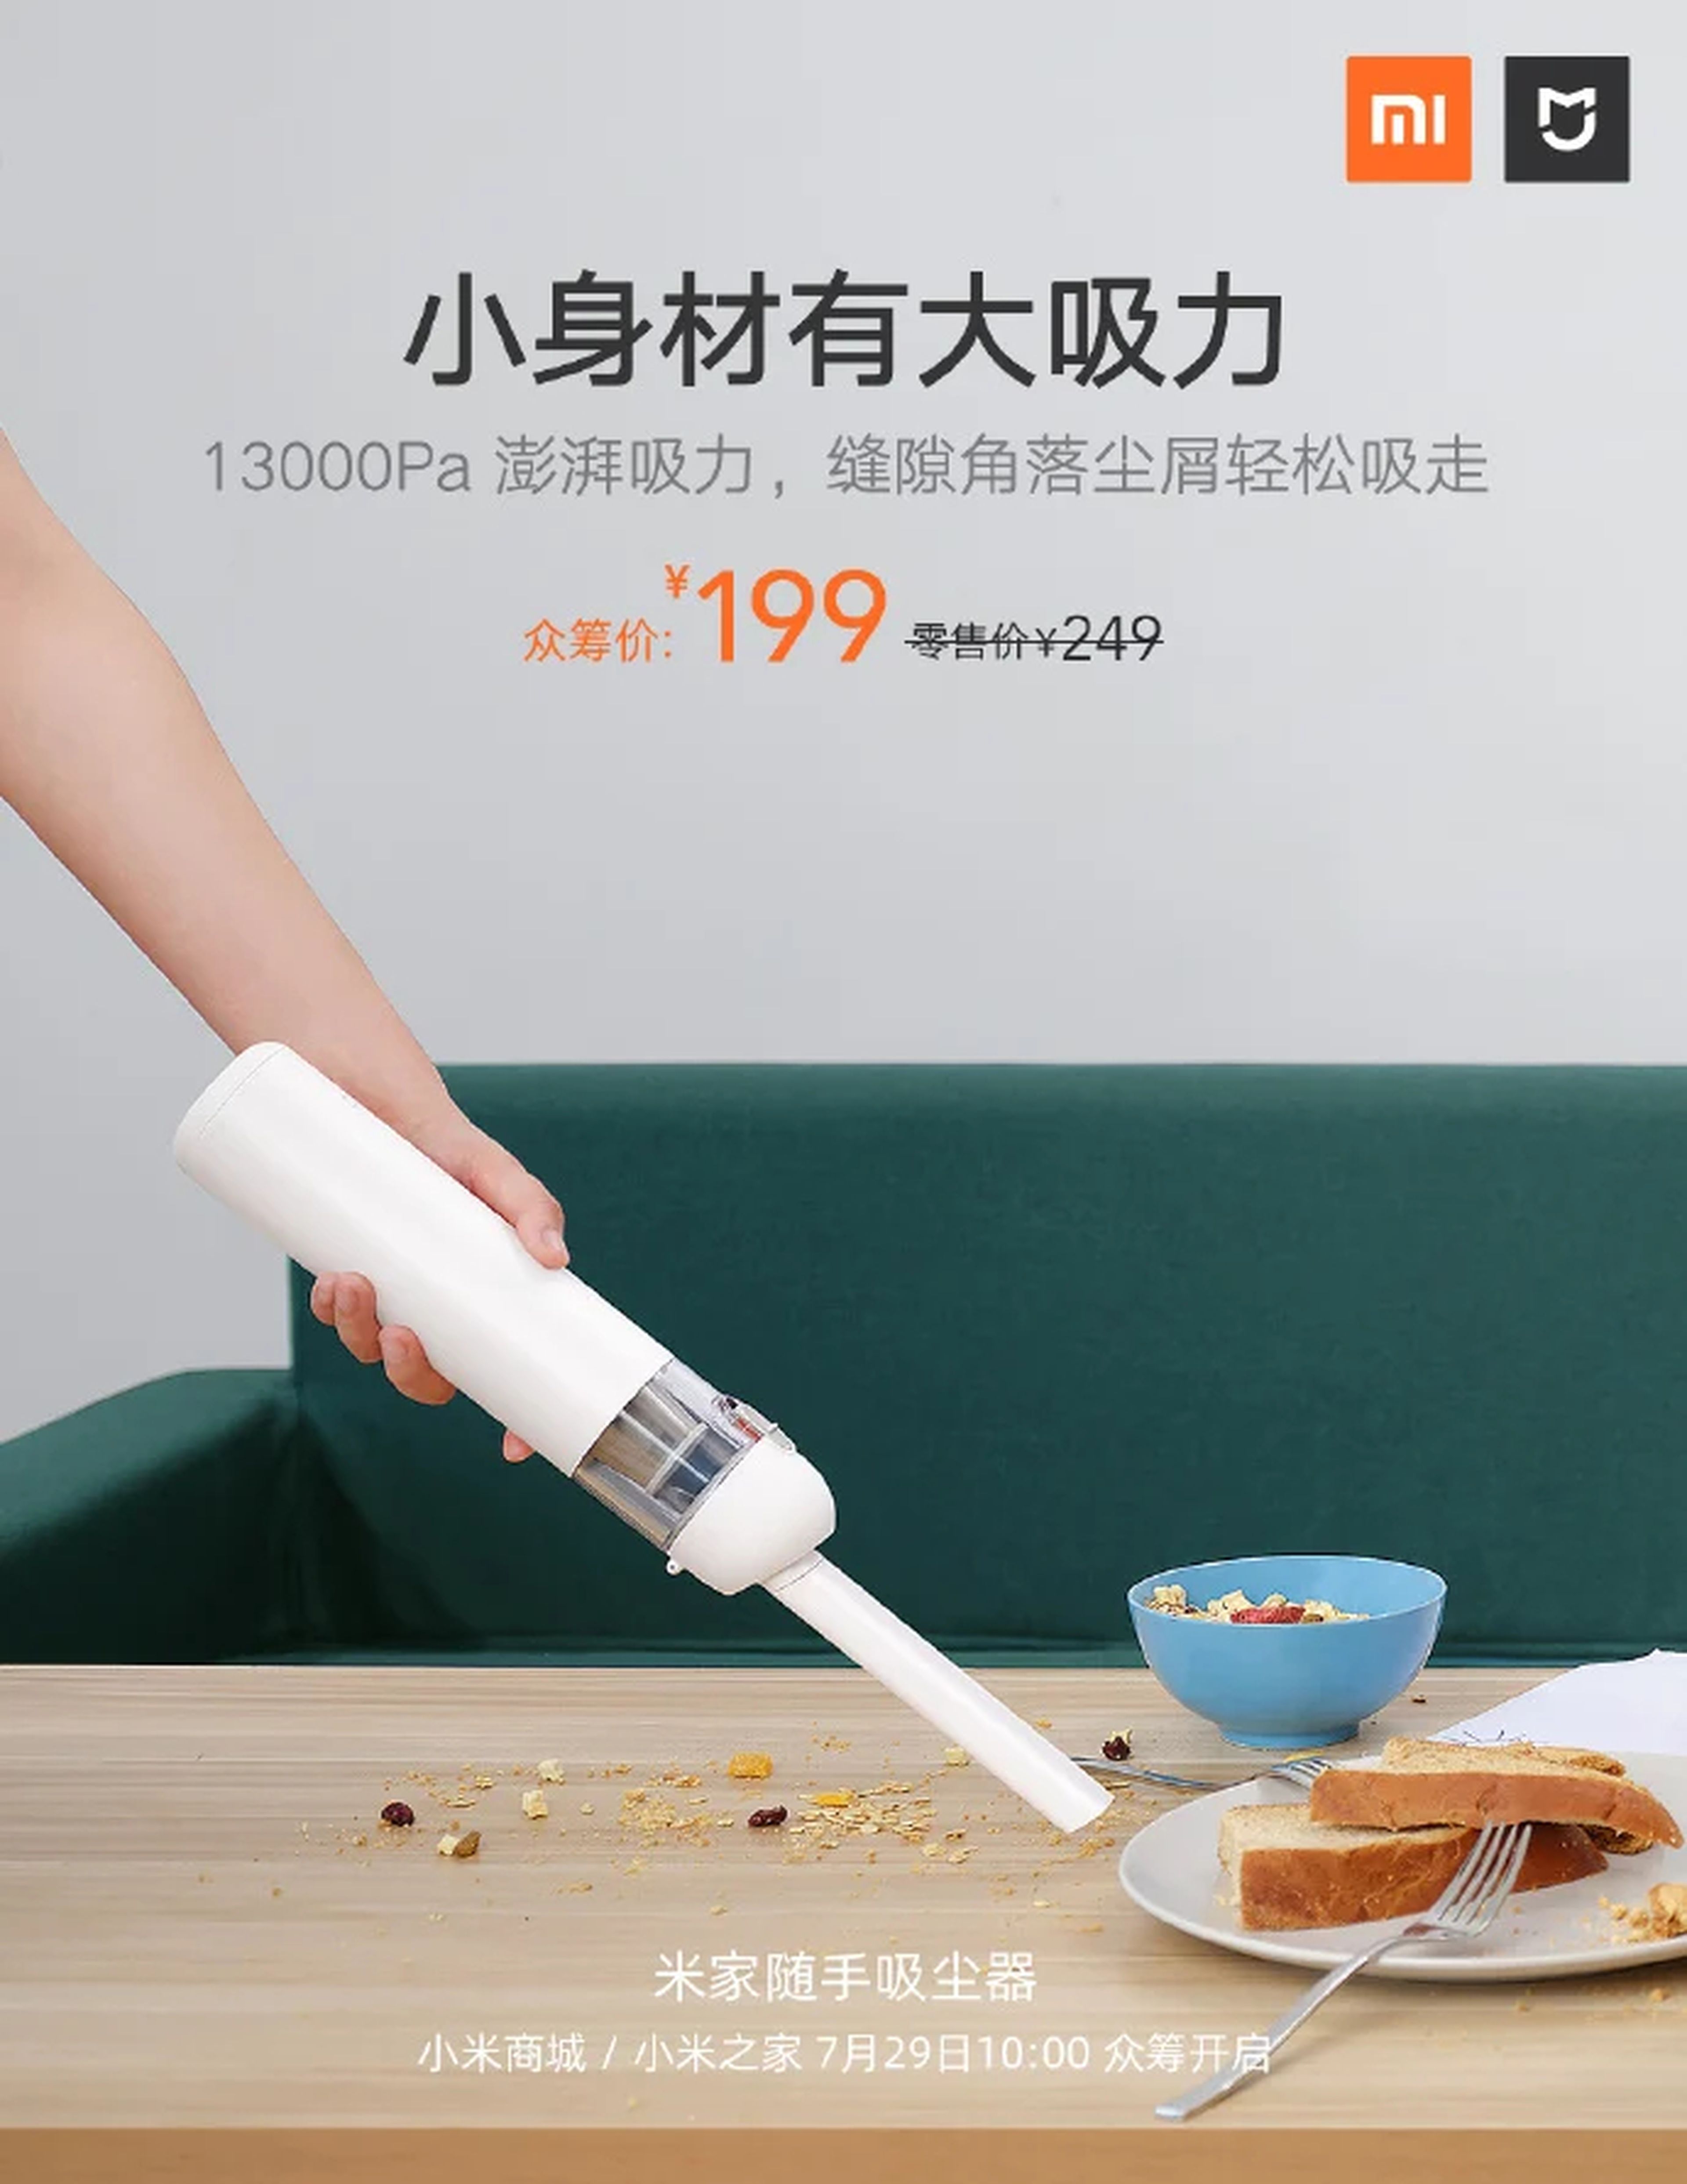 Xiaomi presenta su nueva aspiradora de mano sin cables bajo la